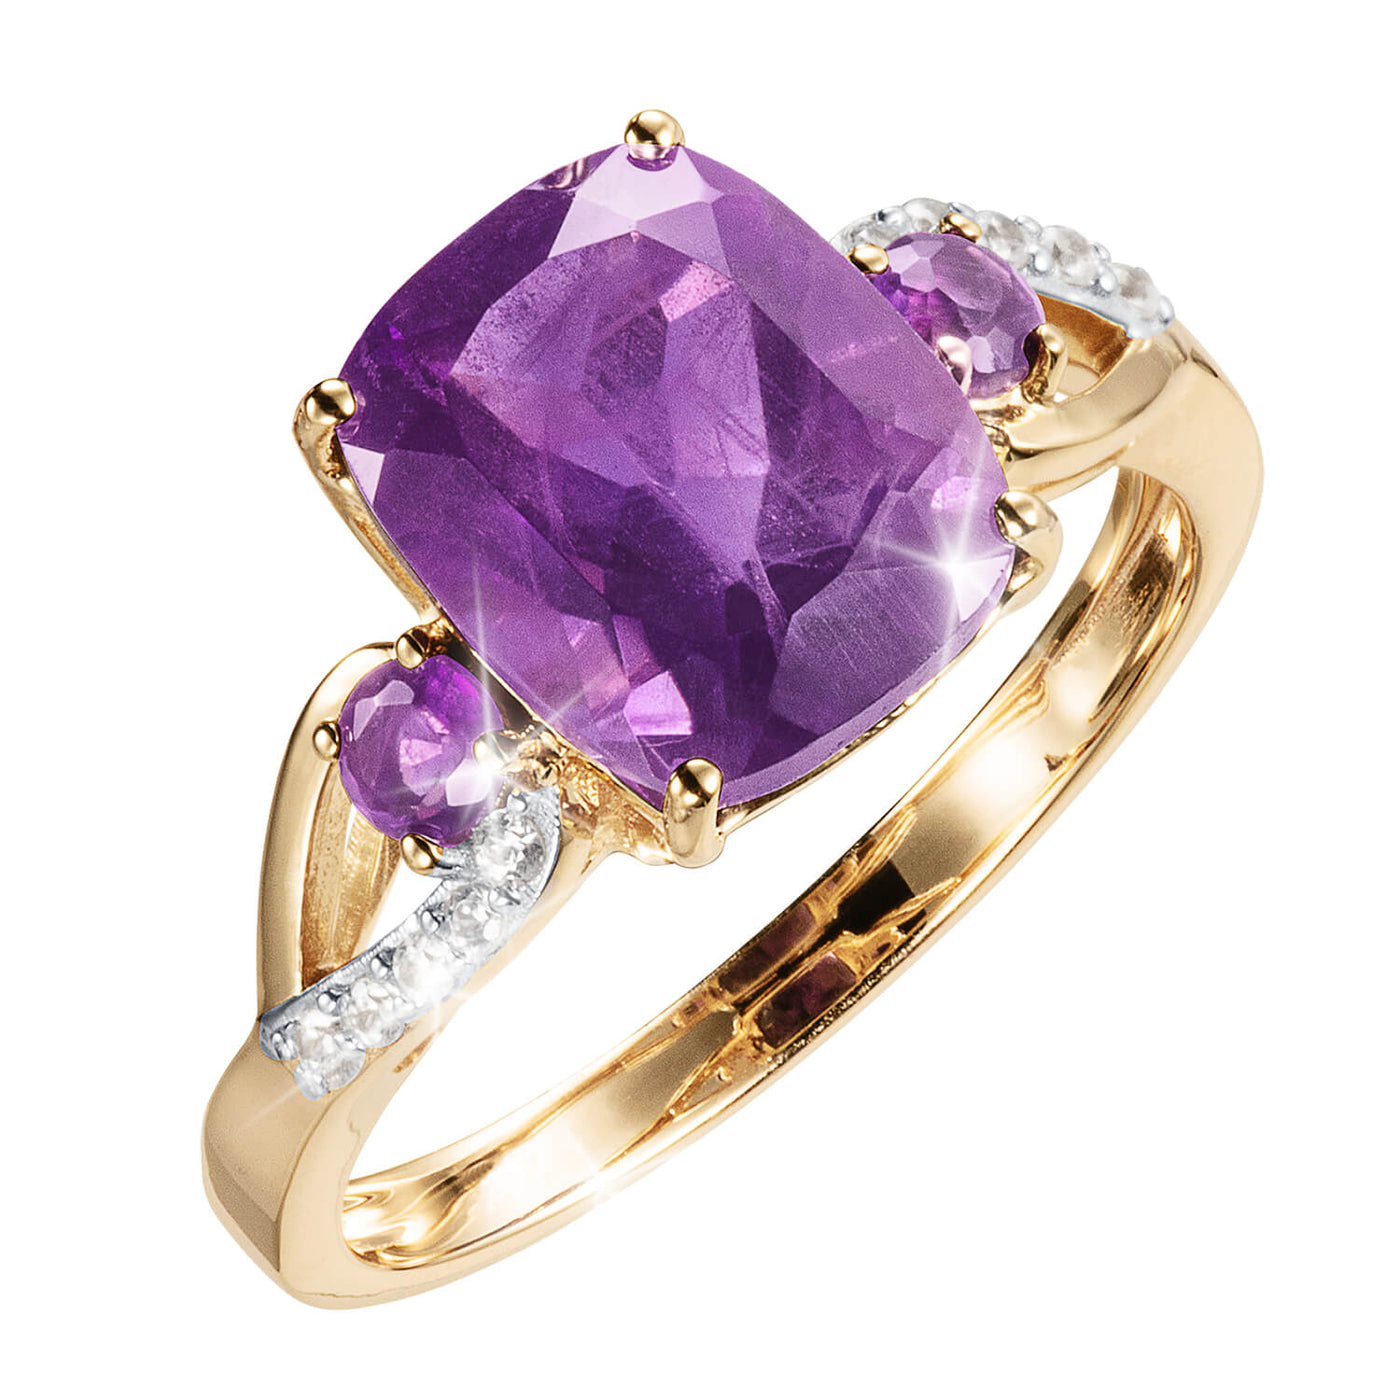 Daniel Steiger Enchanted Amethyst Ring